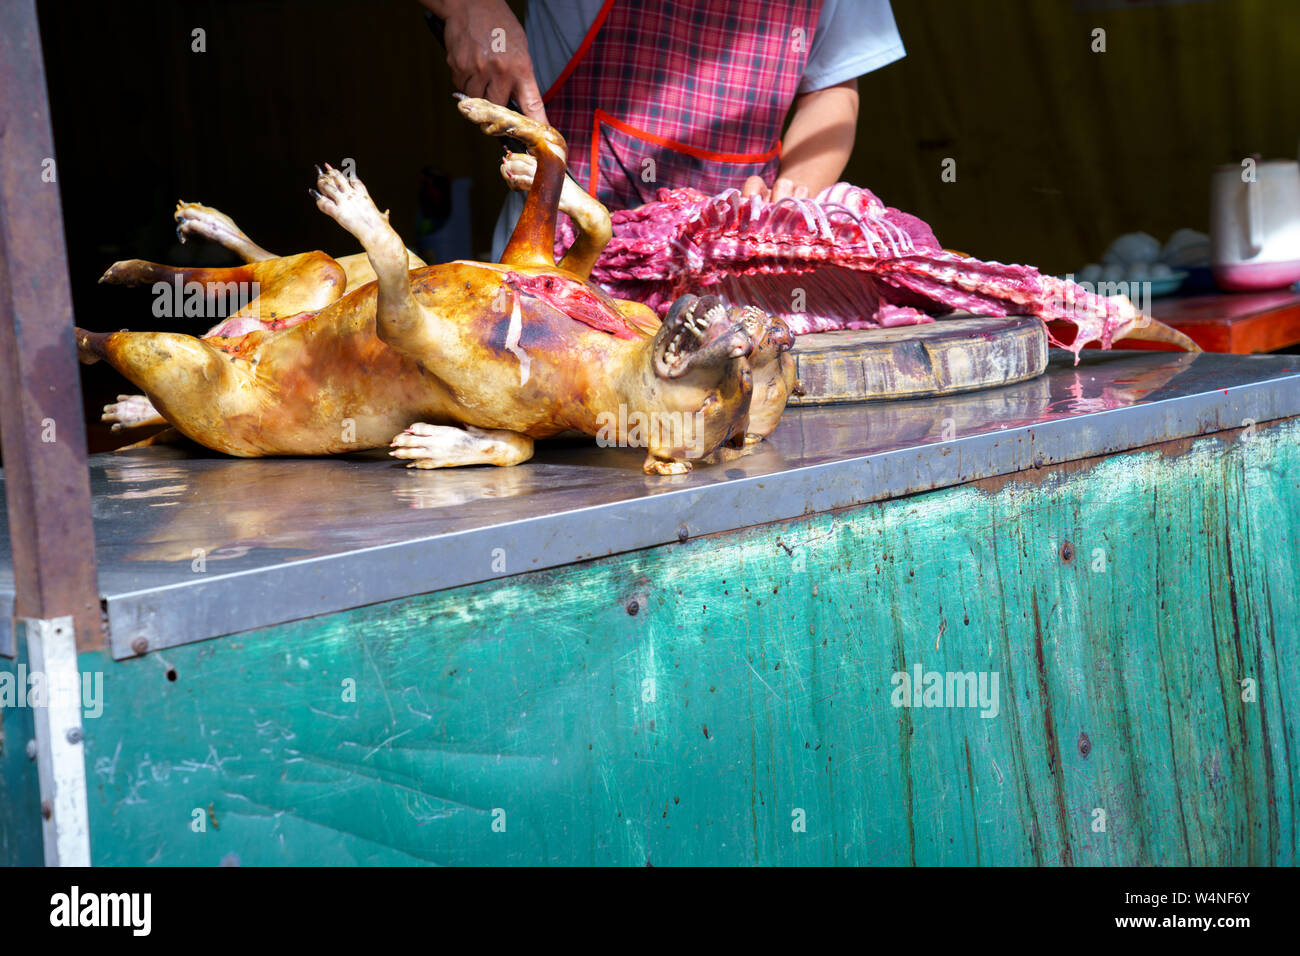 Mann seziert, Pay Hund Fleisch toter Körper verkaufen Gegrilltes für Grill Street Food von Vietnam. Essen ist schwierig. Stockfoto